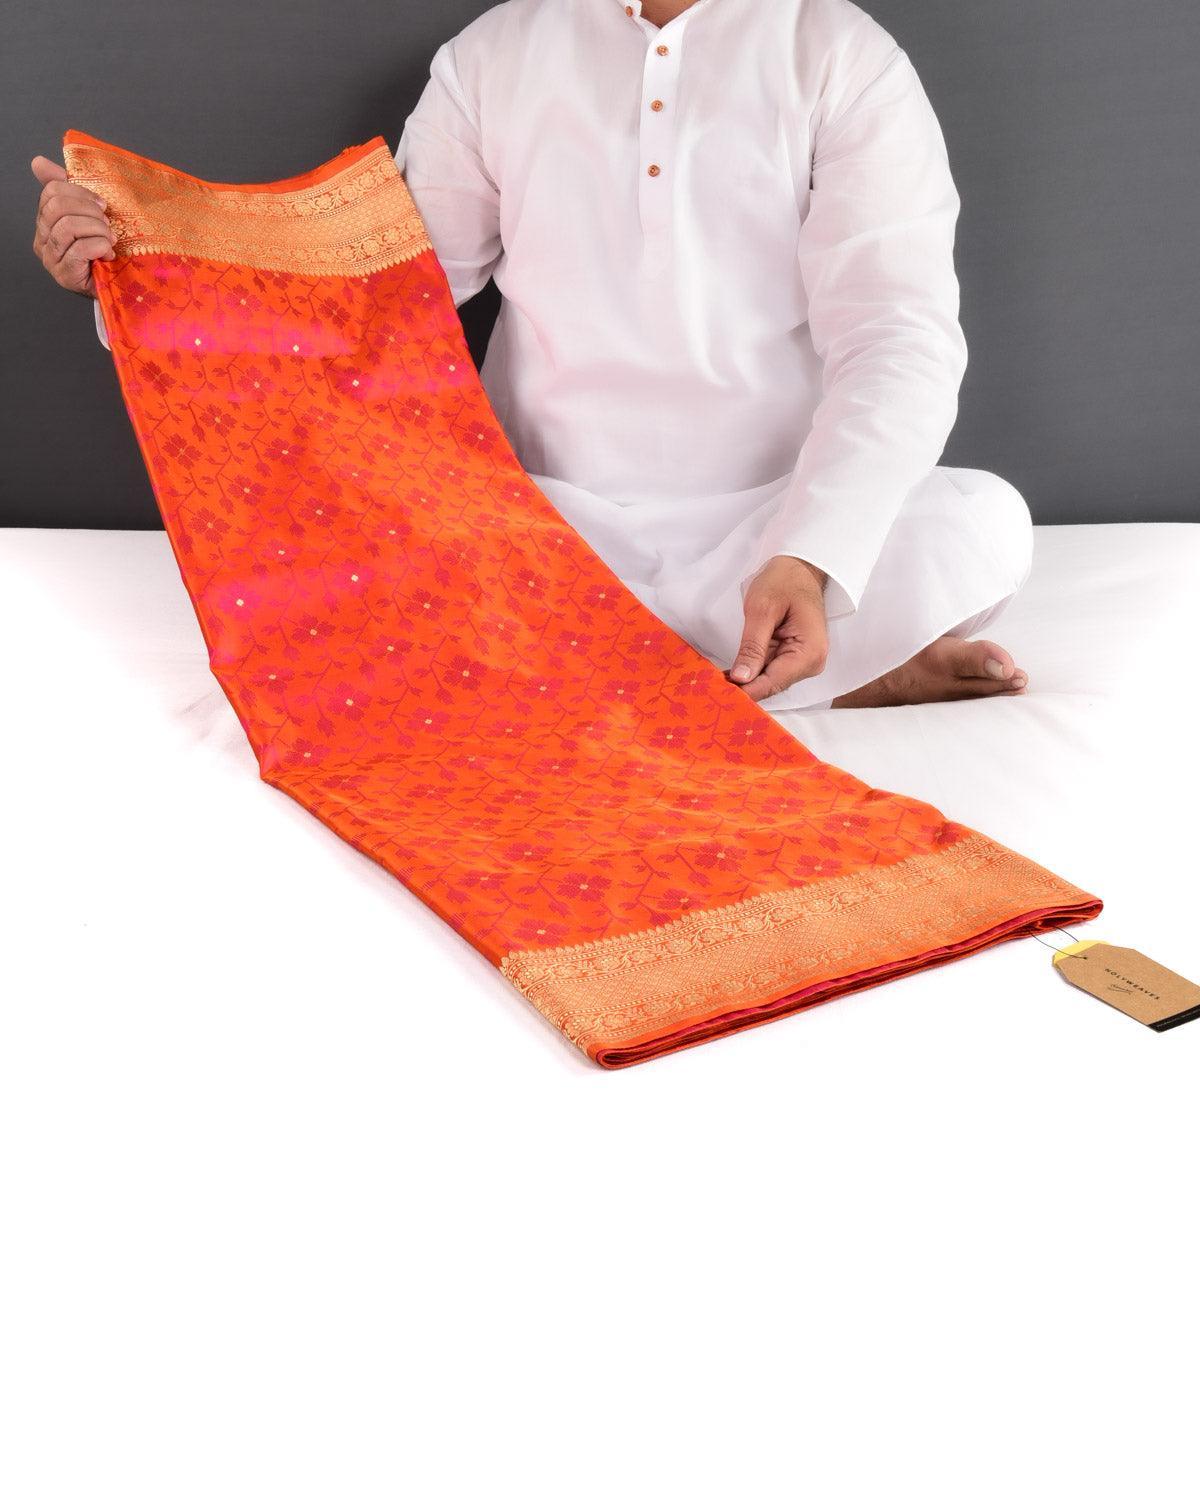 Shot Orange Banarasi Dotted Satin Tanchoi Brocade Handwoven Katan Silk Saree - By HolyWeaves, Benares